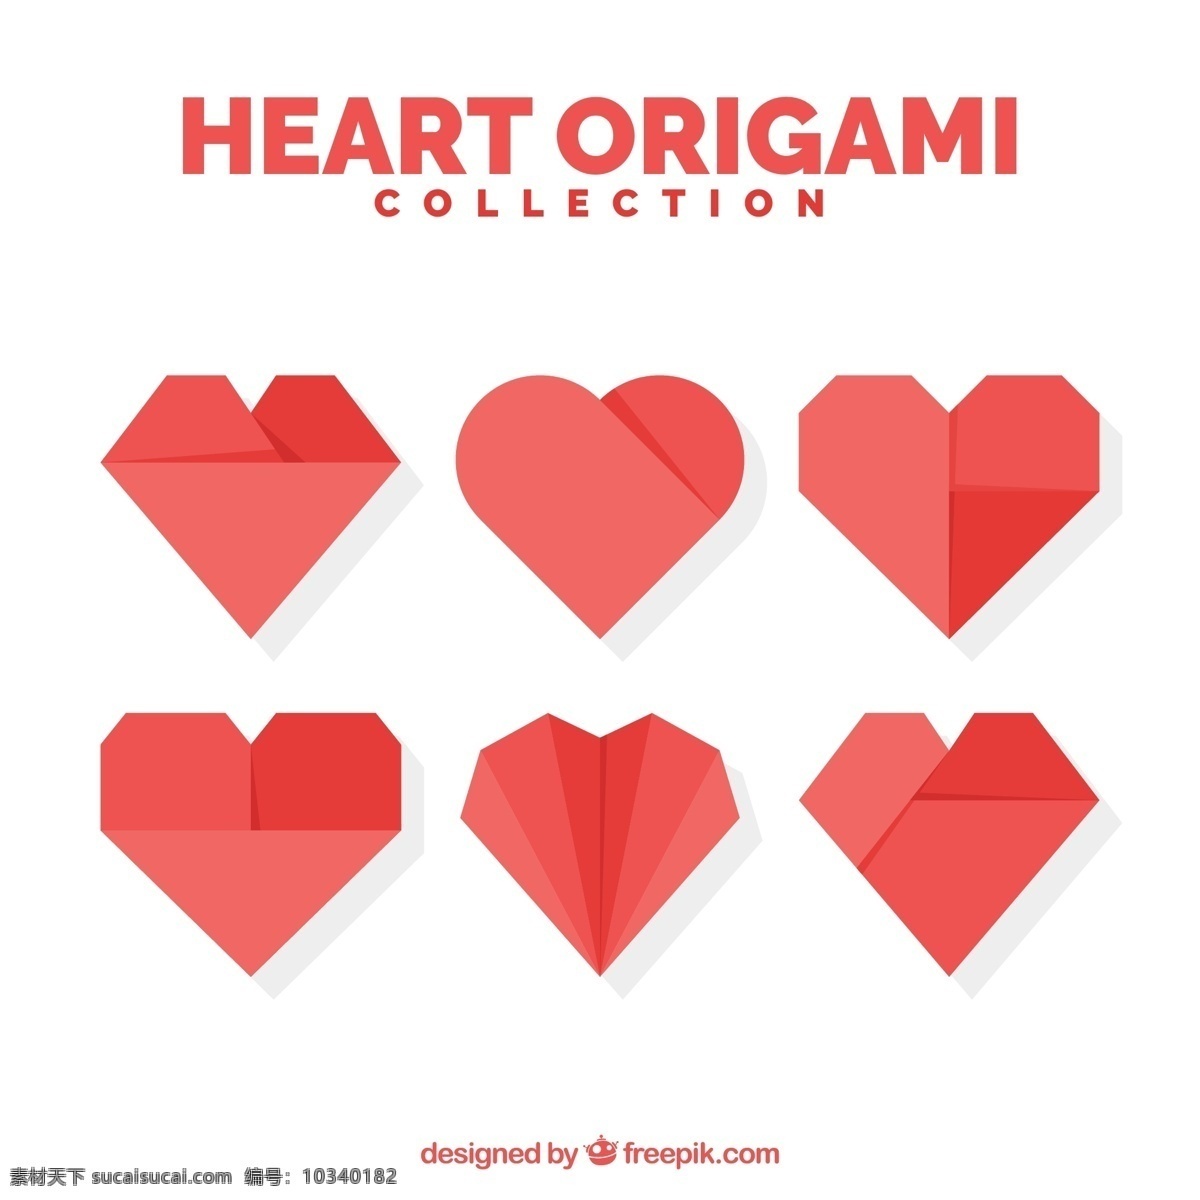 组 折纸 质感 爱心 创意设计 图标 图形 元素 可爱 商务 红色爱心 心形 心脏